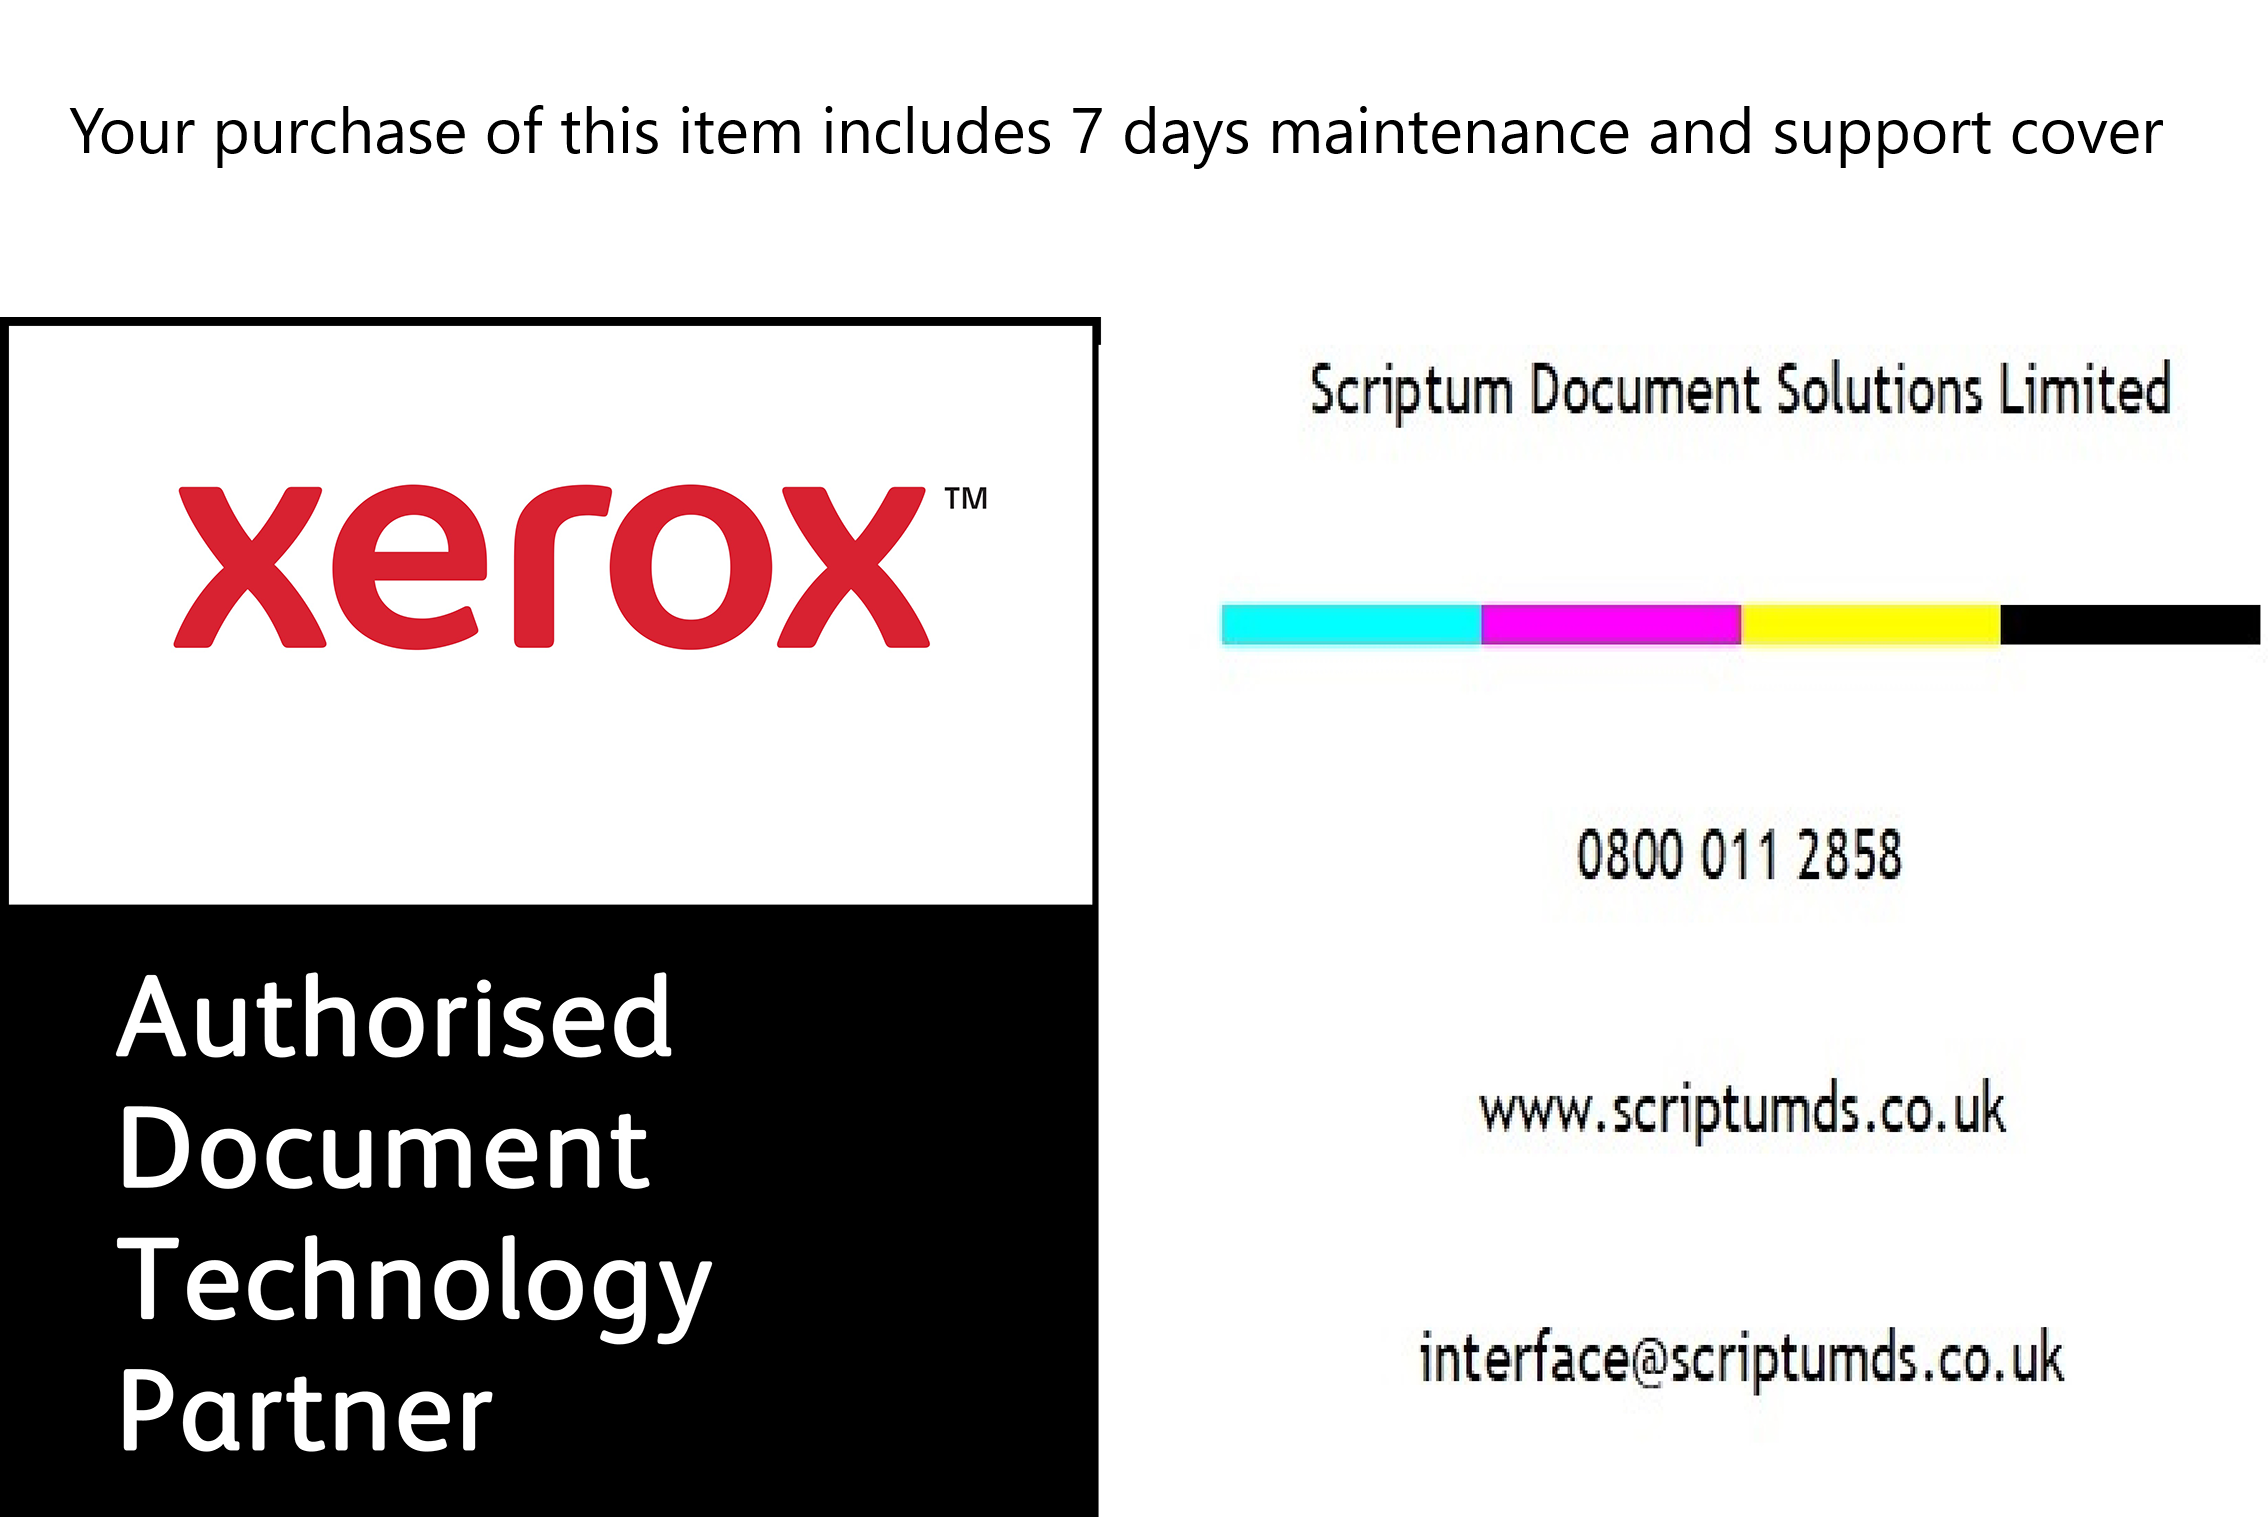 Xerox Printer Stand for Xerox B410/C410 & VersaLink B415/C415/C625 - 097S05244